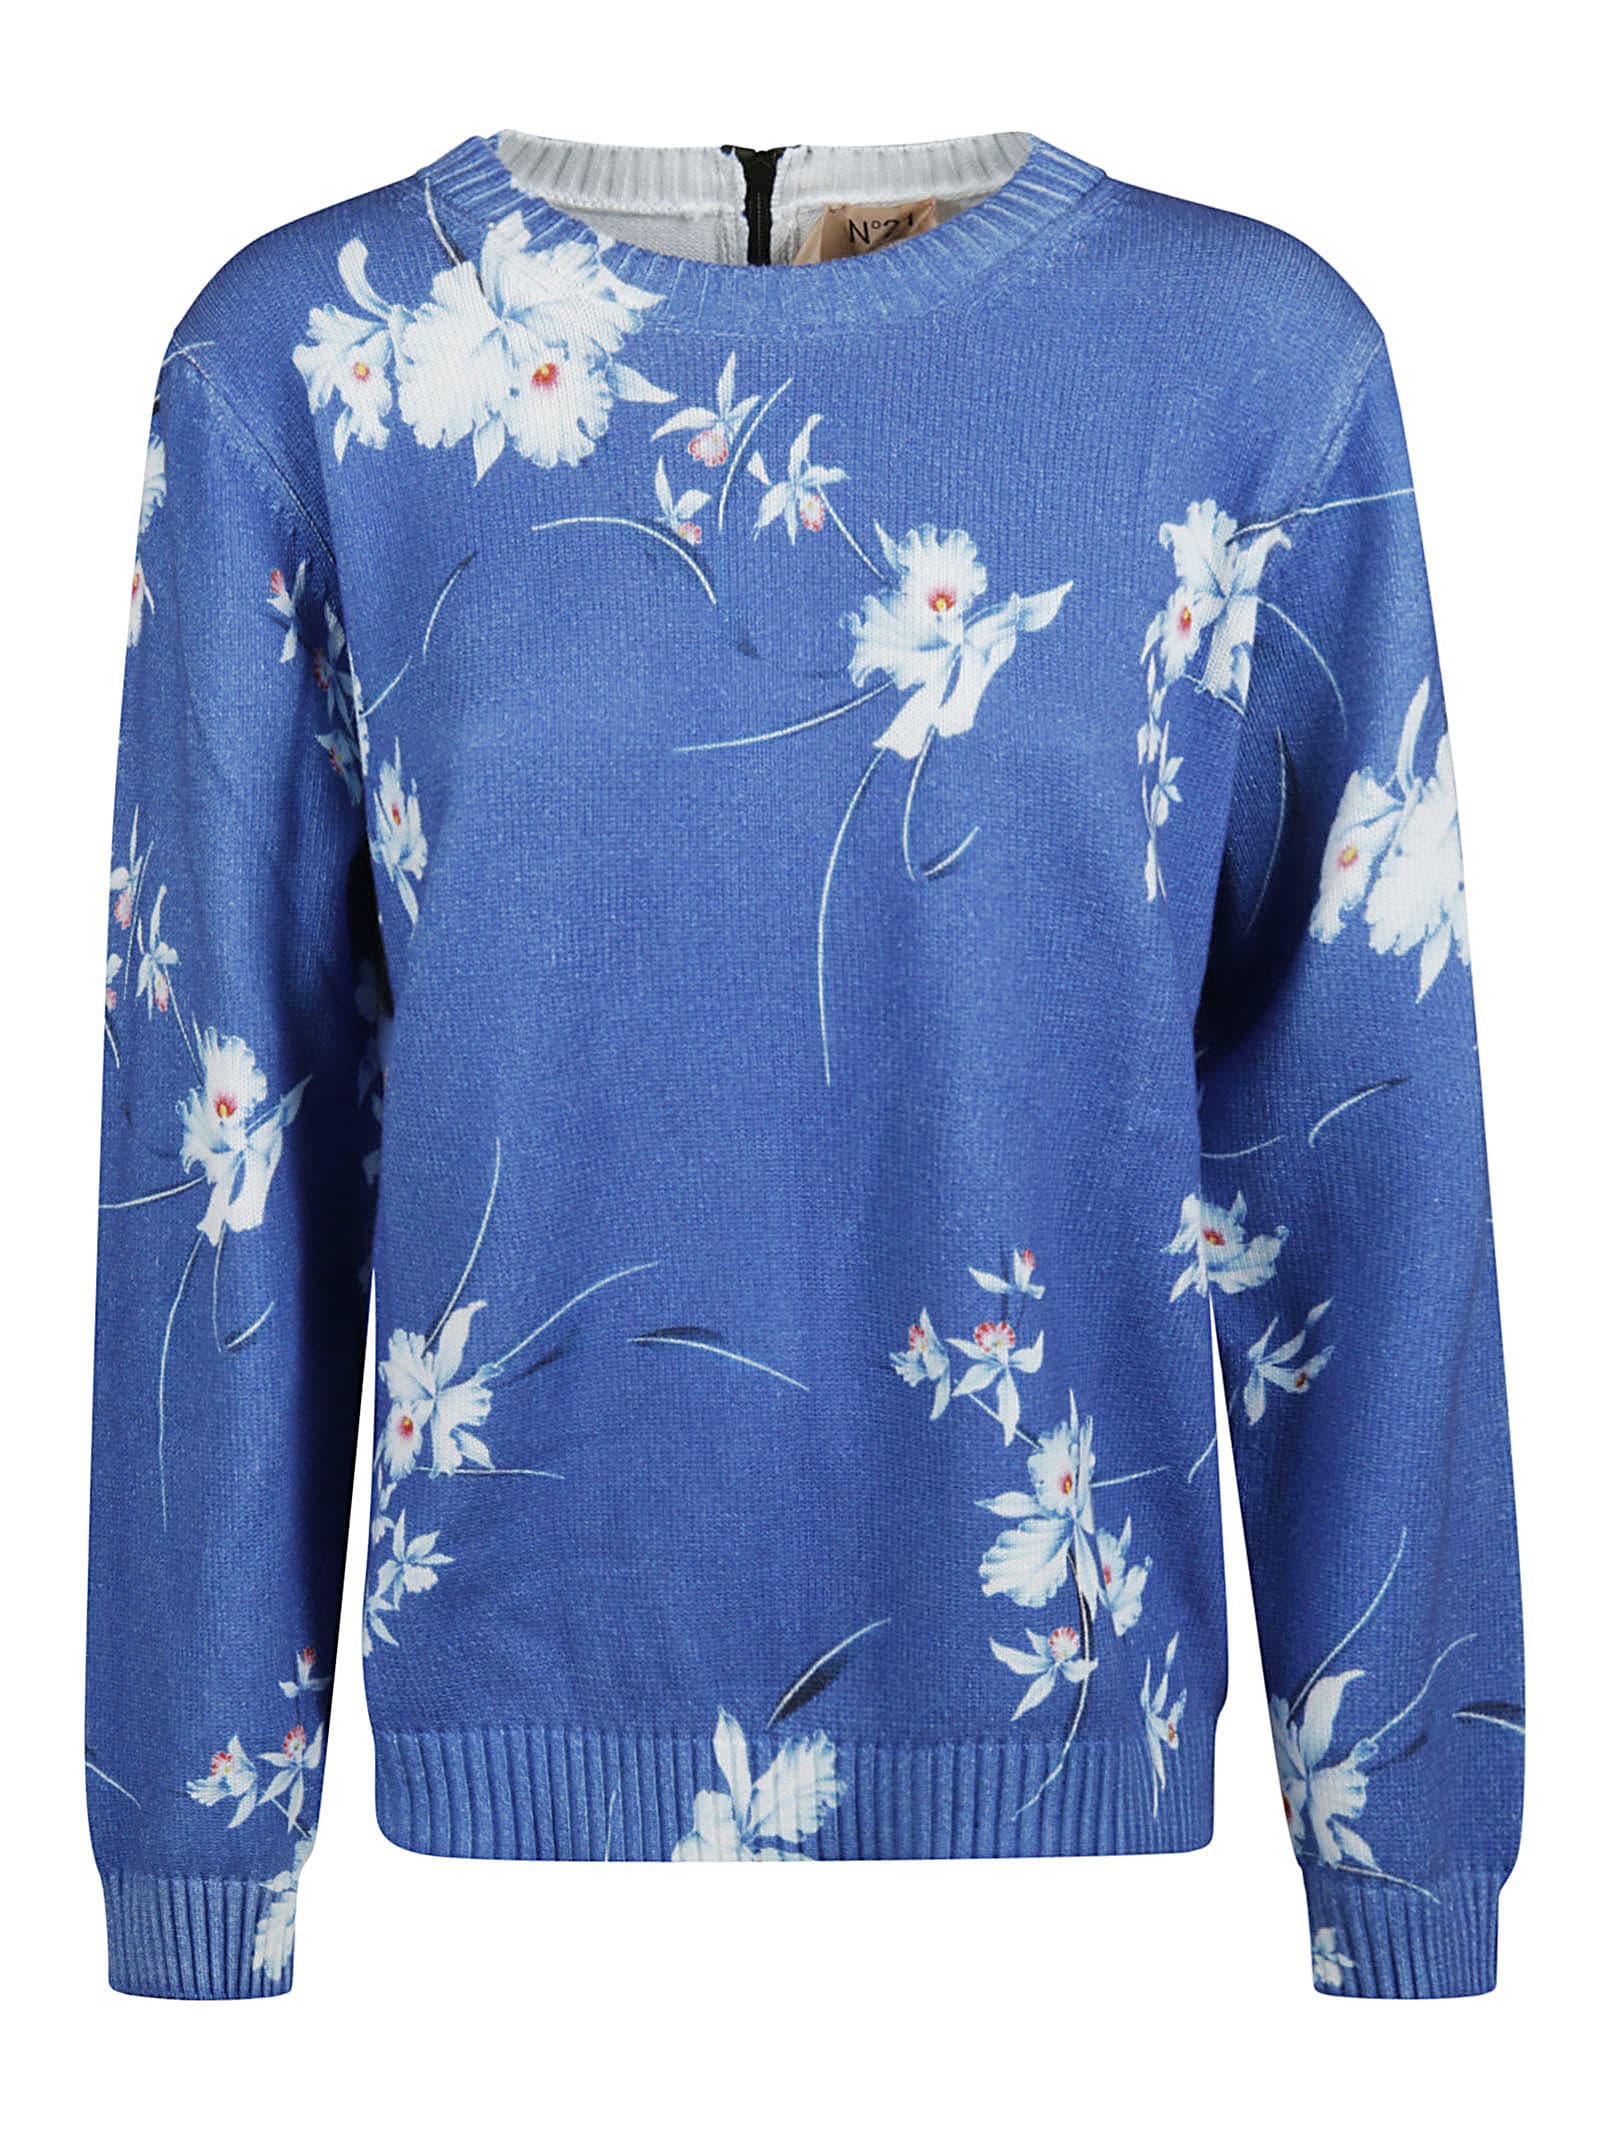 N.21 Back Zip Floral Print Sweatshirt